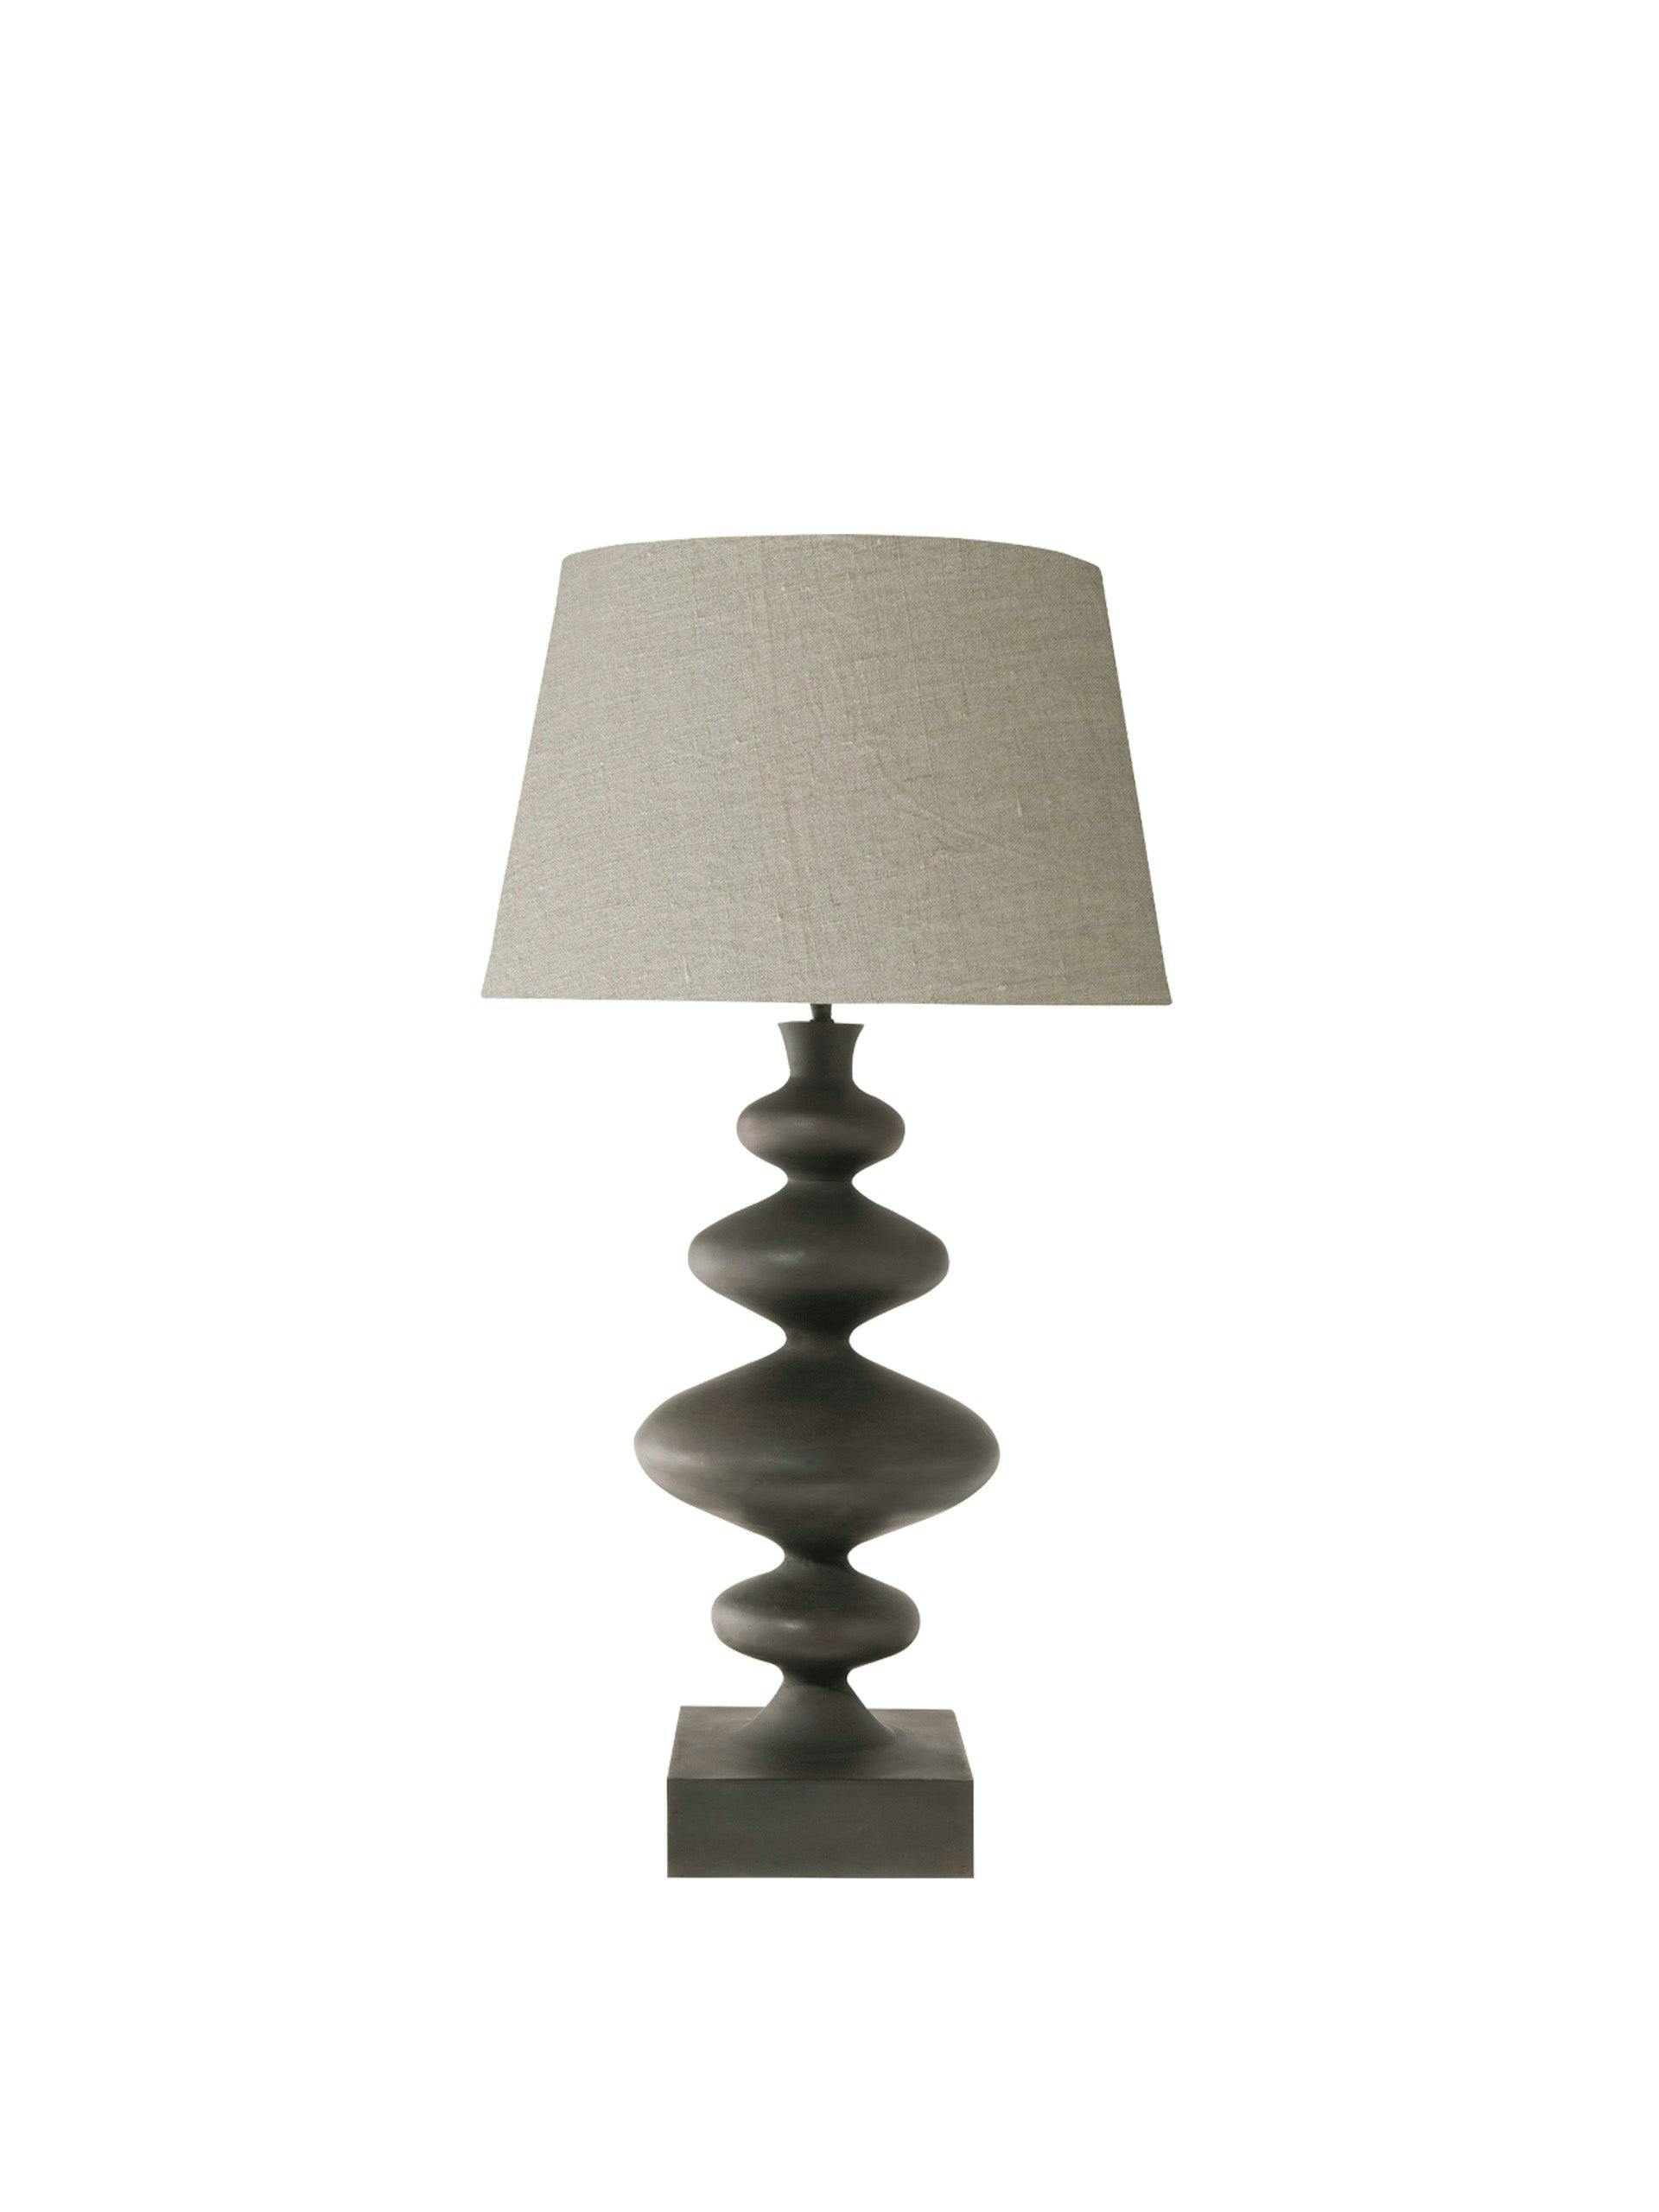 Minerva metal table lamp